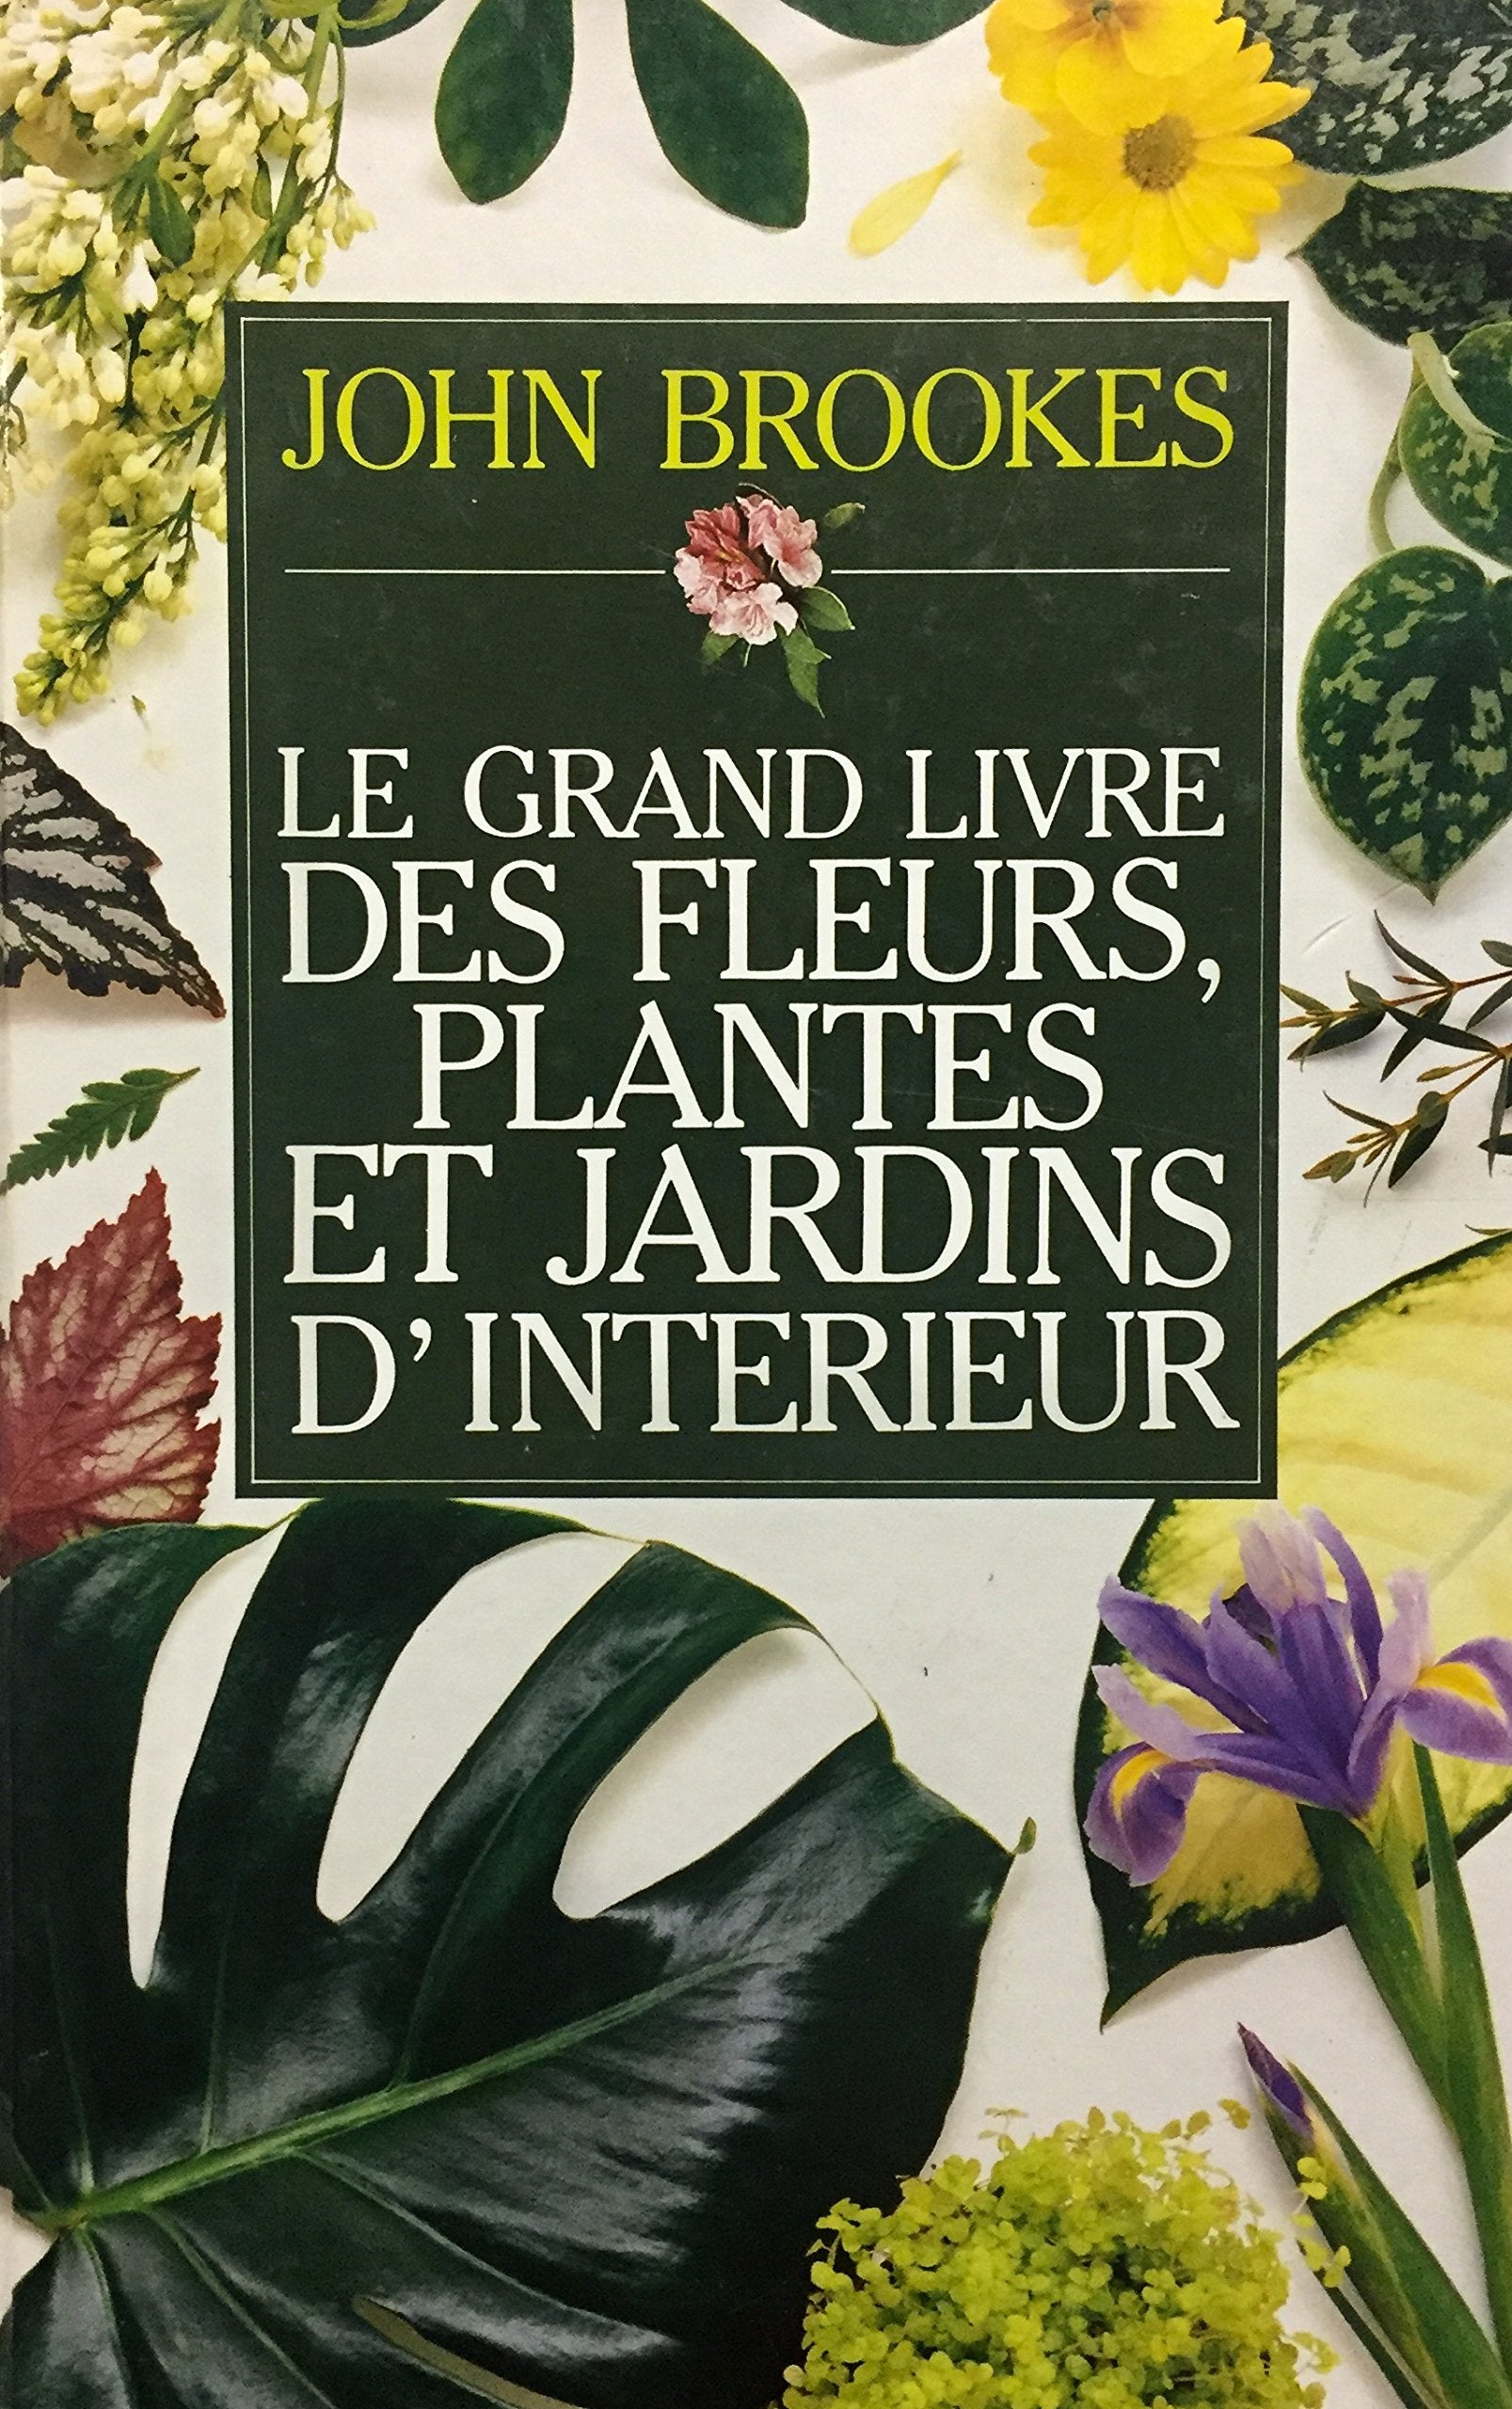 Livre ISBN 2724231759 Le grand livre des fleurs, plantes et jardins d'intérieur (John Brookes)